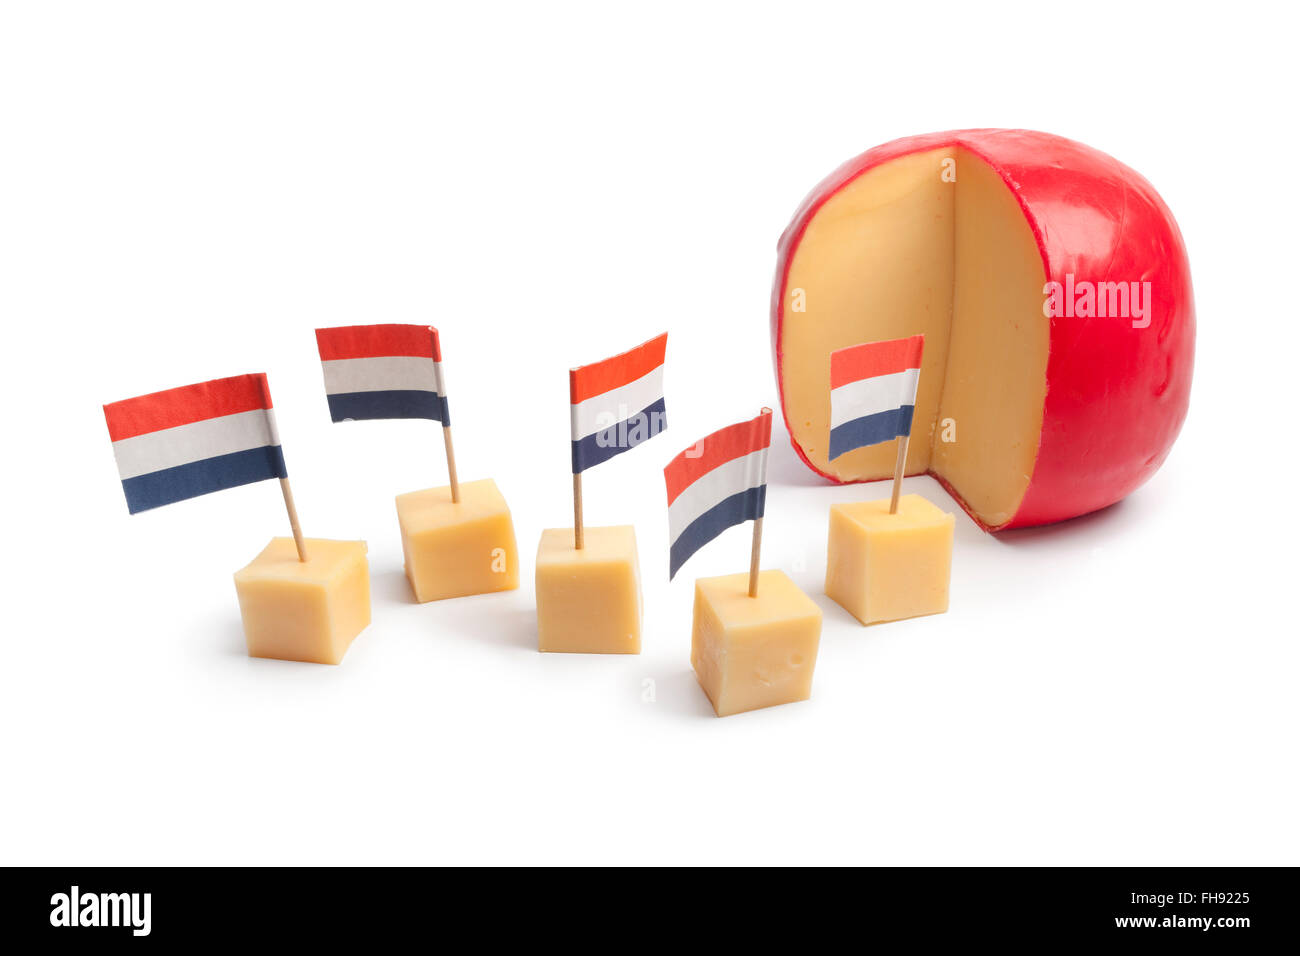 Il formaggio Edam olandese blocchi con la bandiera olandese su sfondo bianco Foto Stock